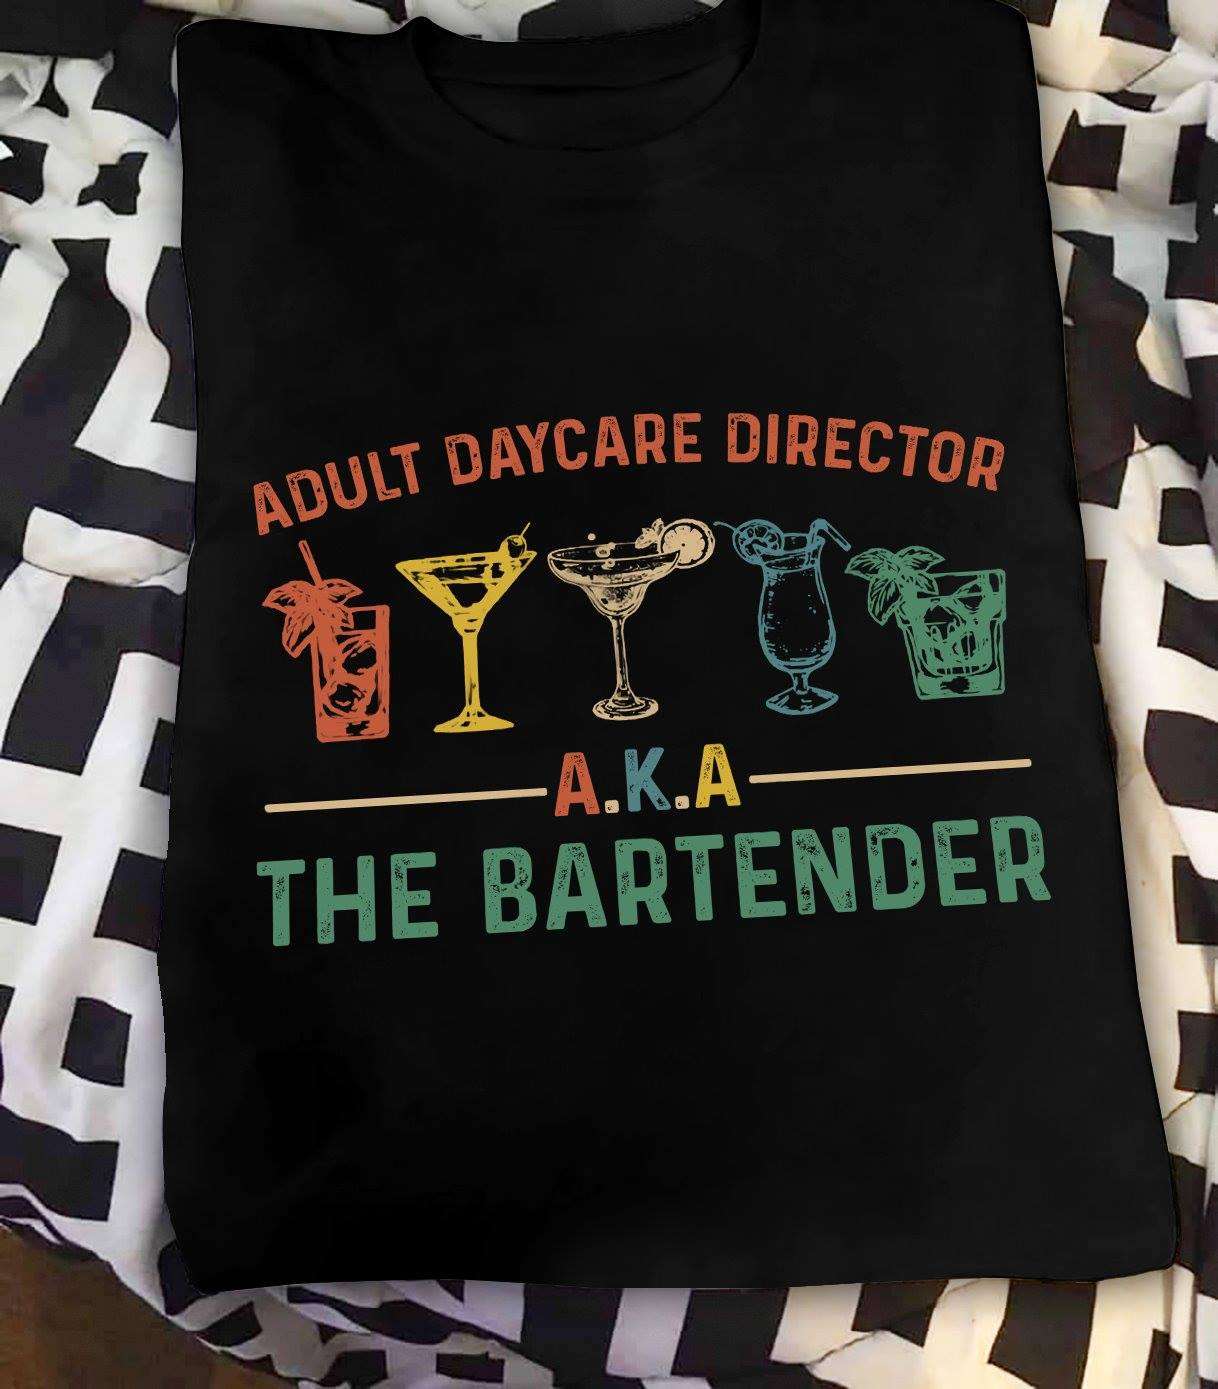 Adult daycare director - The bartender, making drink job